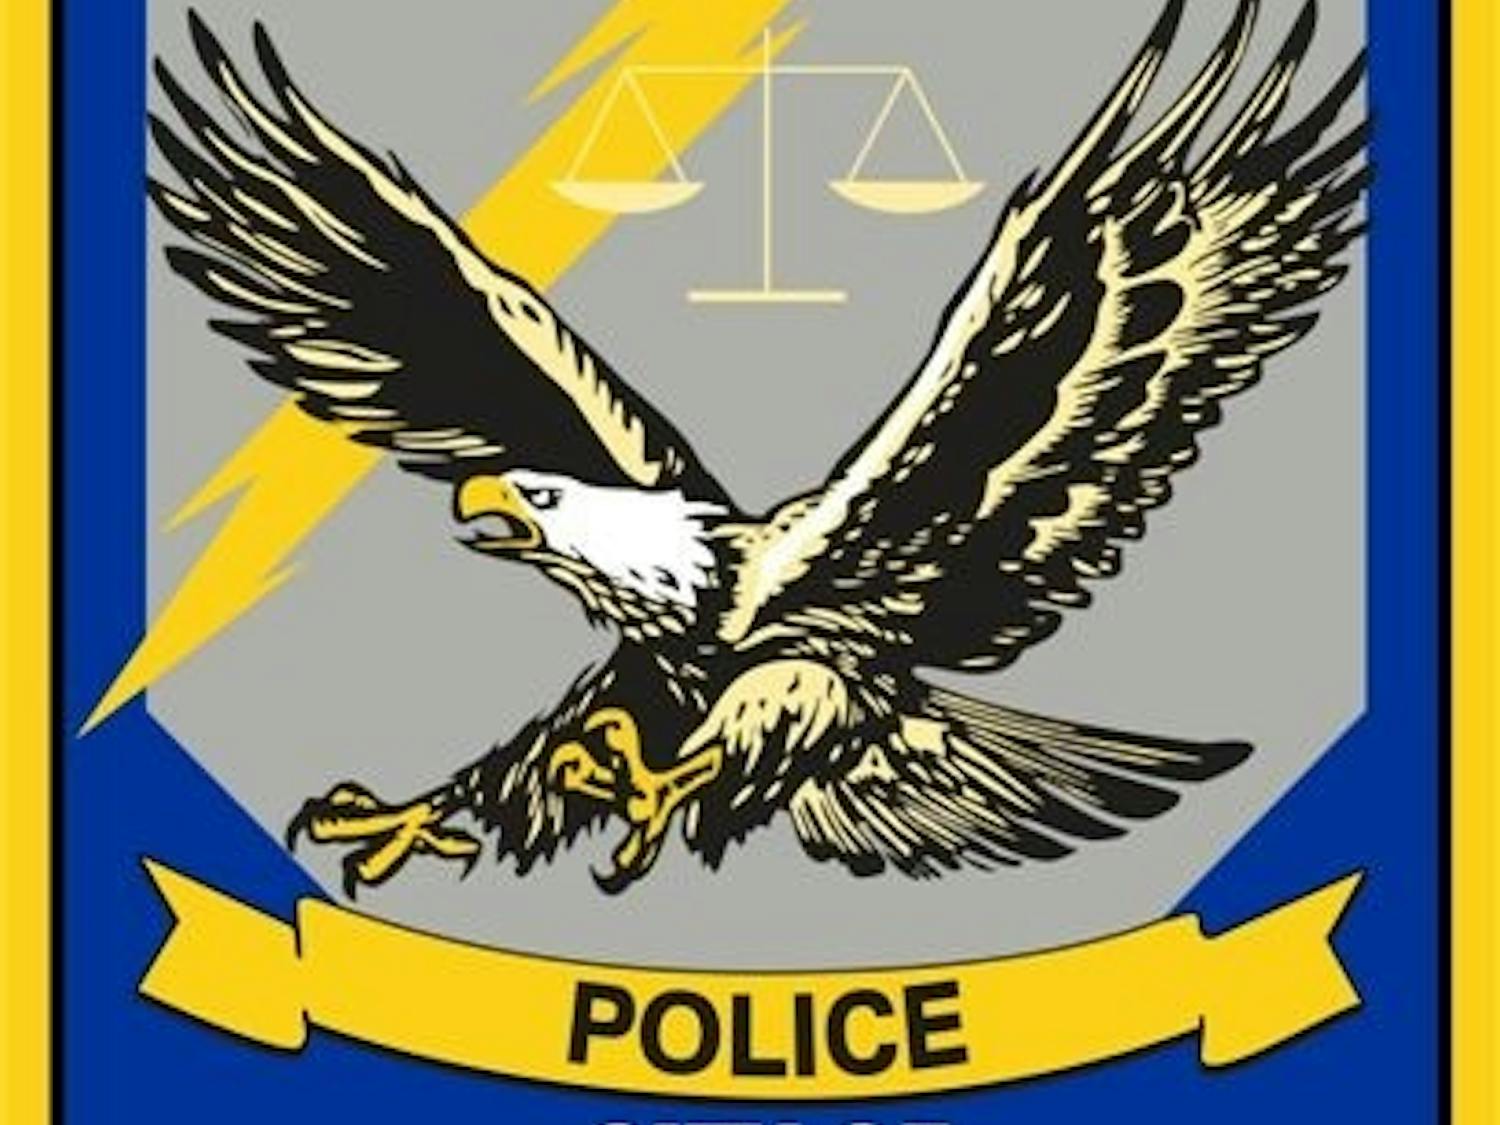 Auburn Police Logo